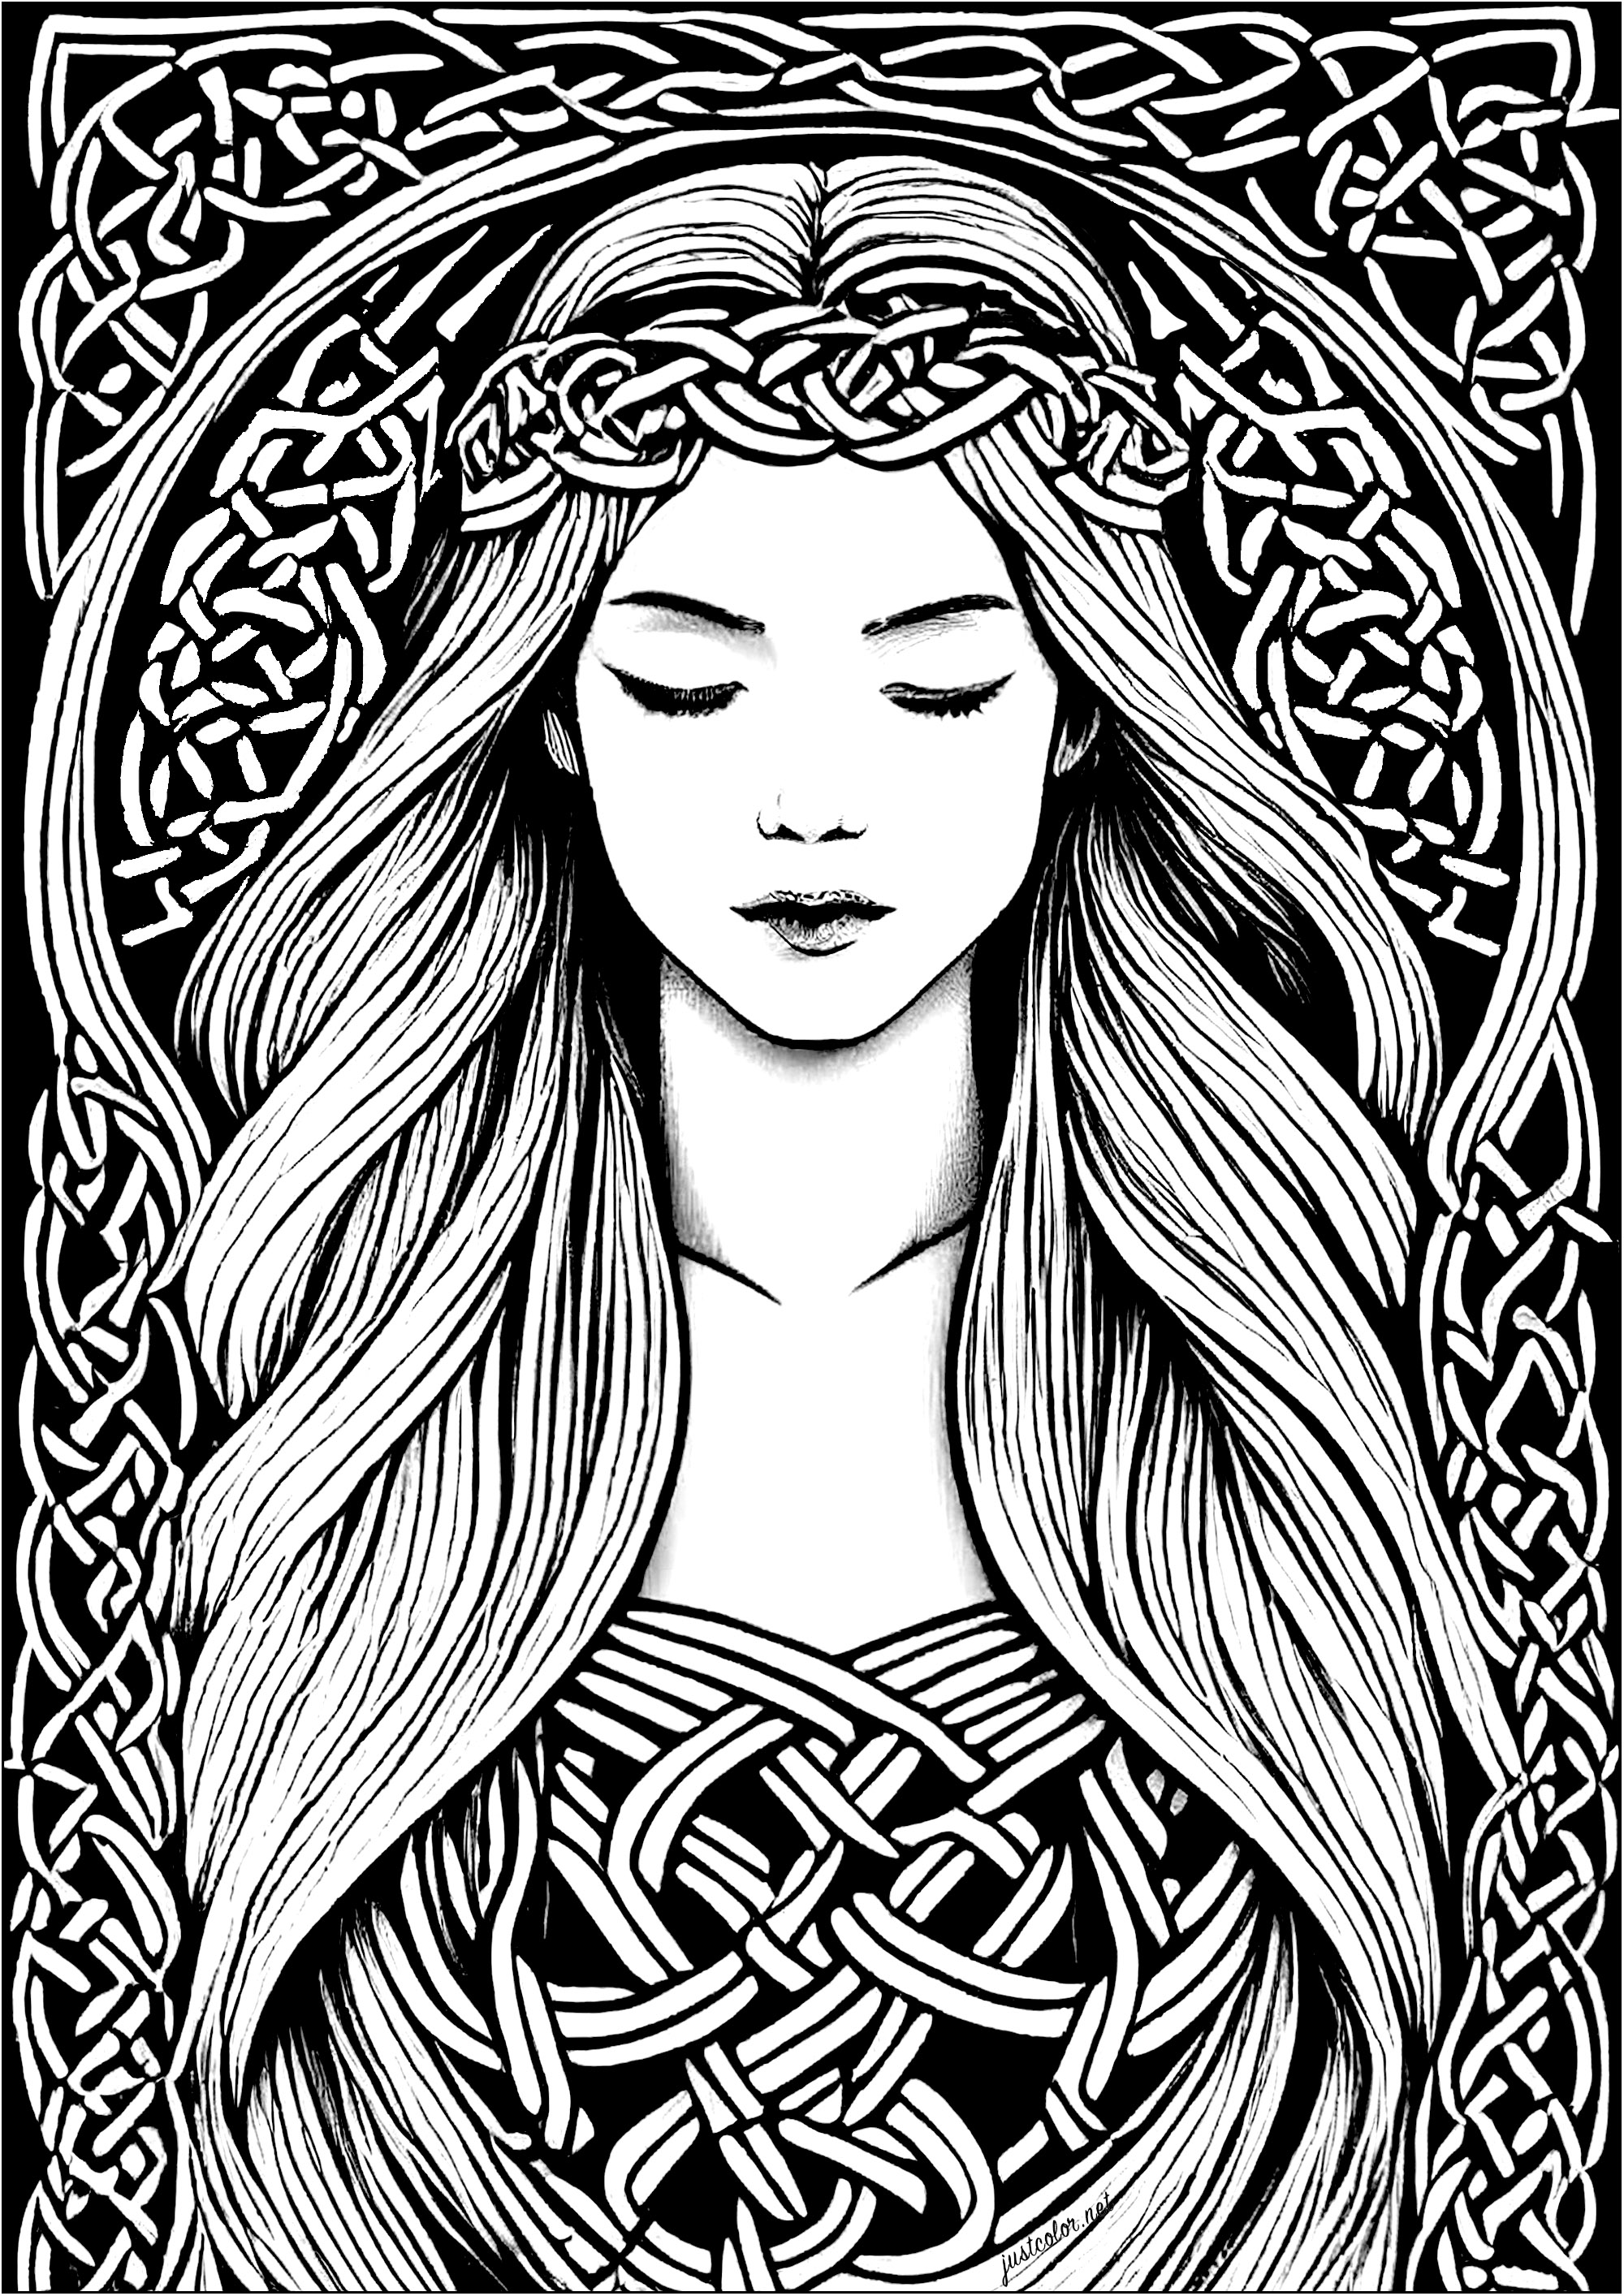 Página para colorear de una joven durmiendo, inspirada en el arte celta. Los motivos presentes en este dibujo se inspiran en los motivos celtas, caracterizados por su intrincación y sus formas vegetales similares a raíces.